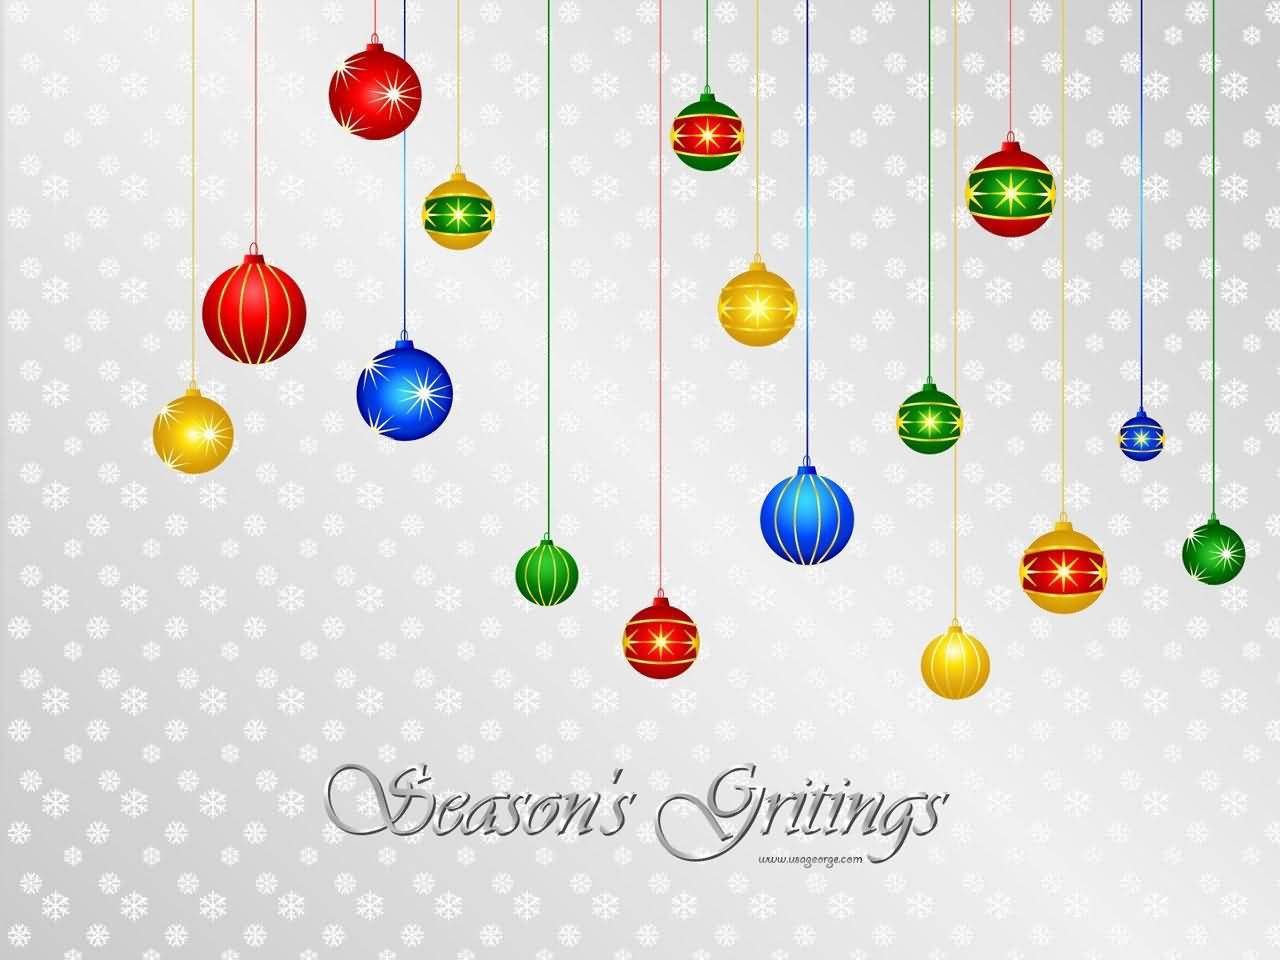 Season’s Greetings Colorful Hanging Christmas Balls